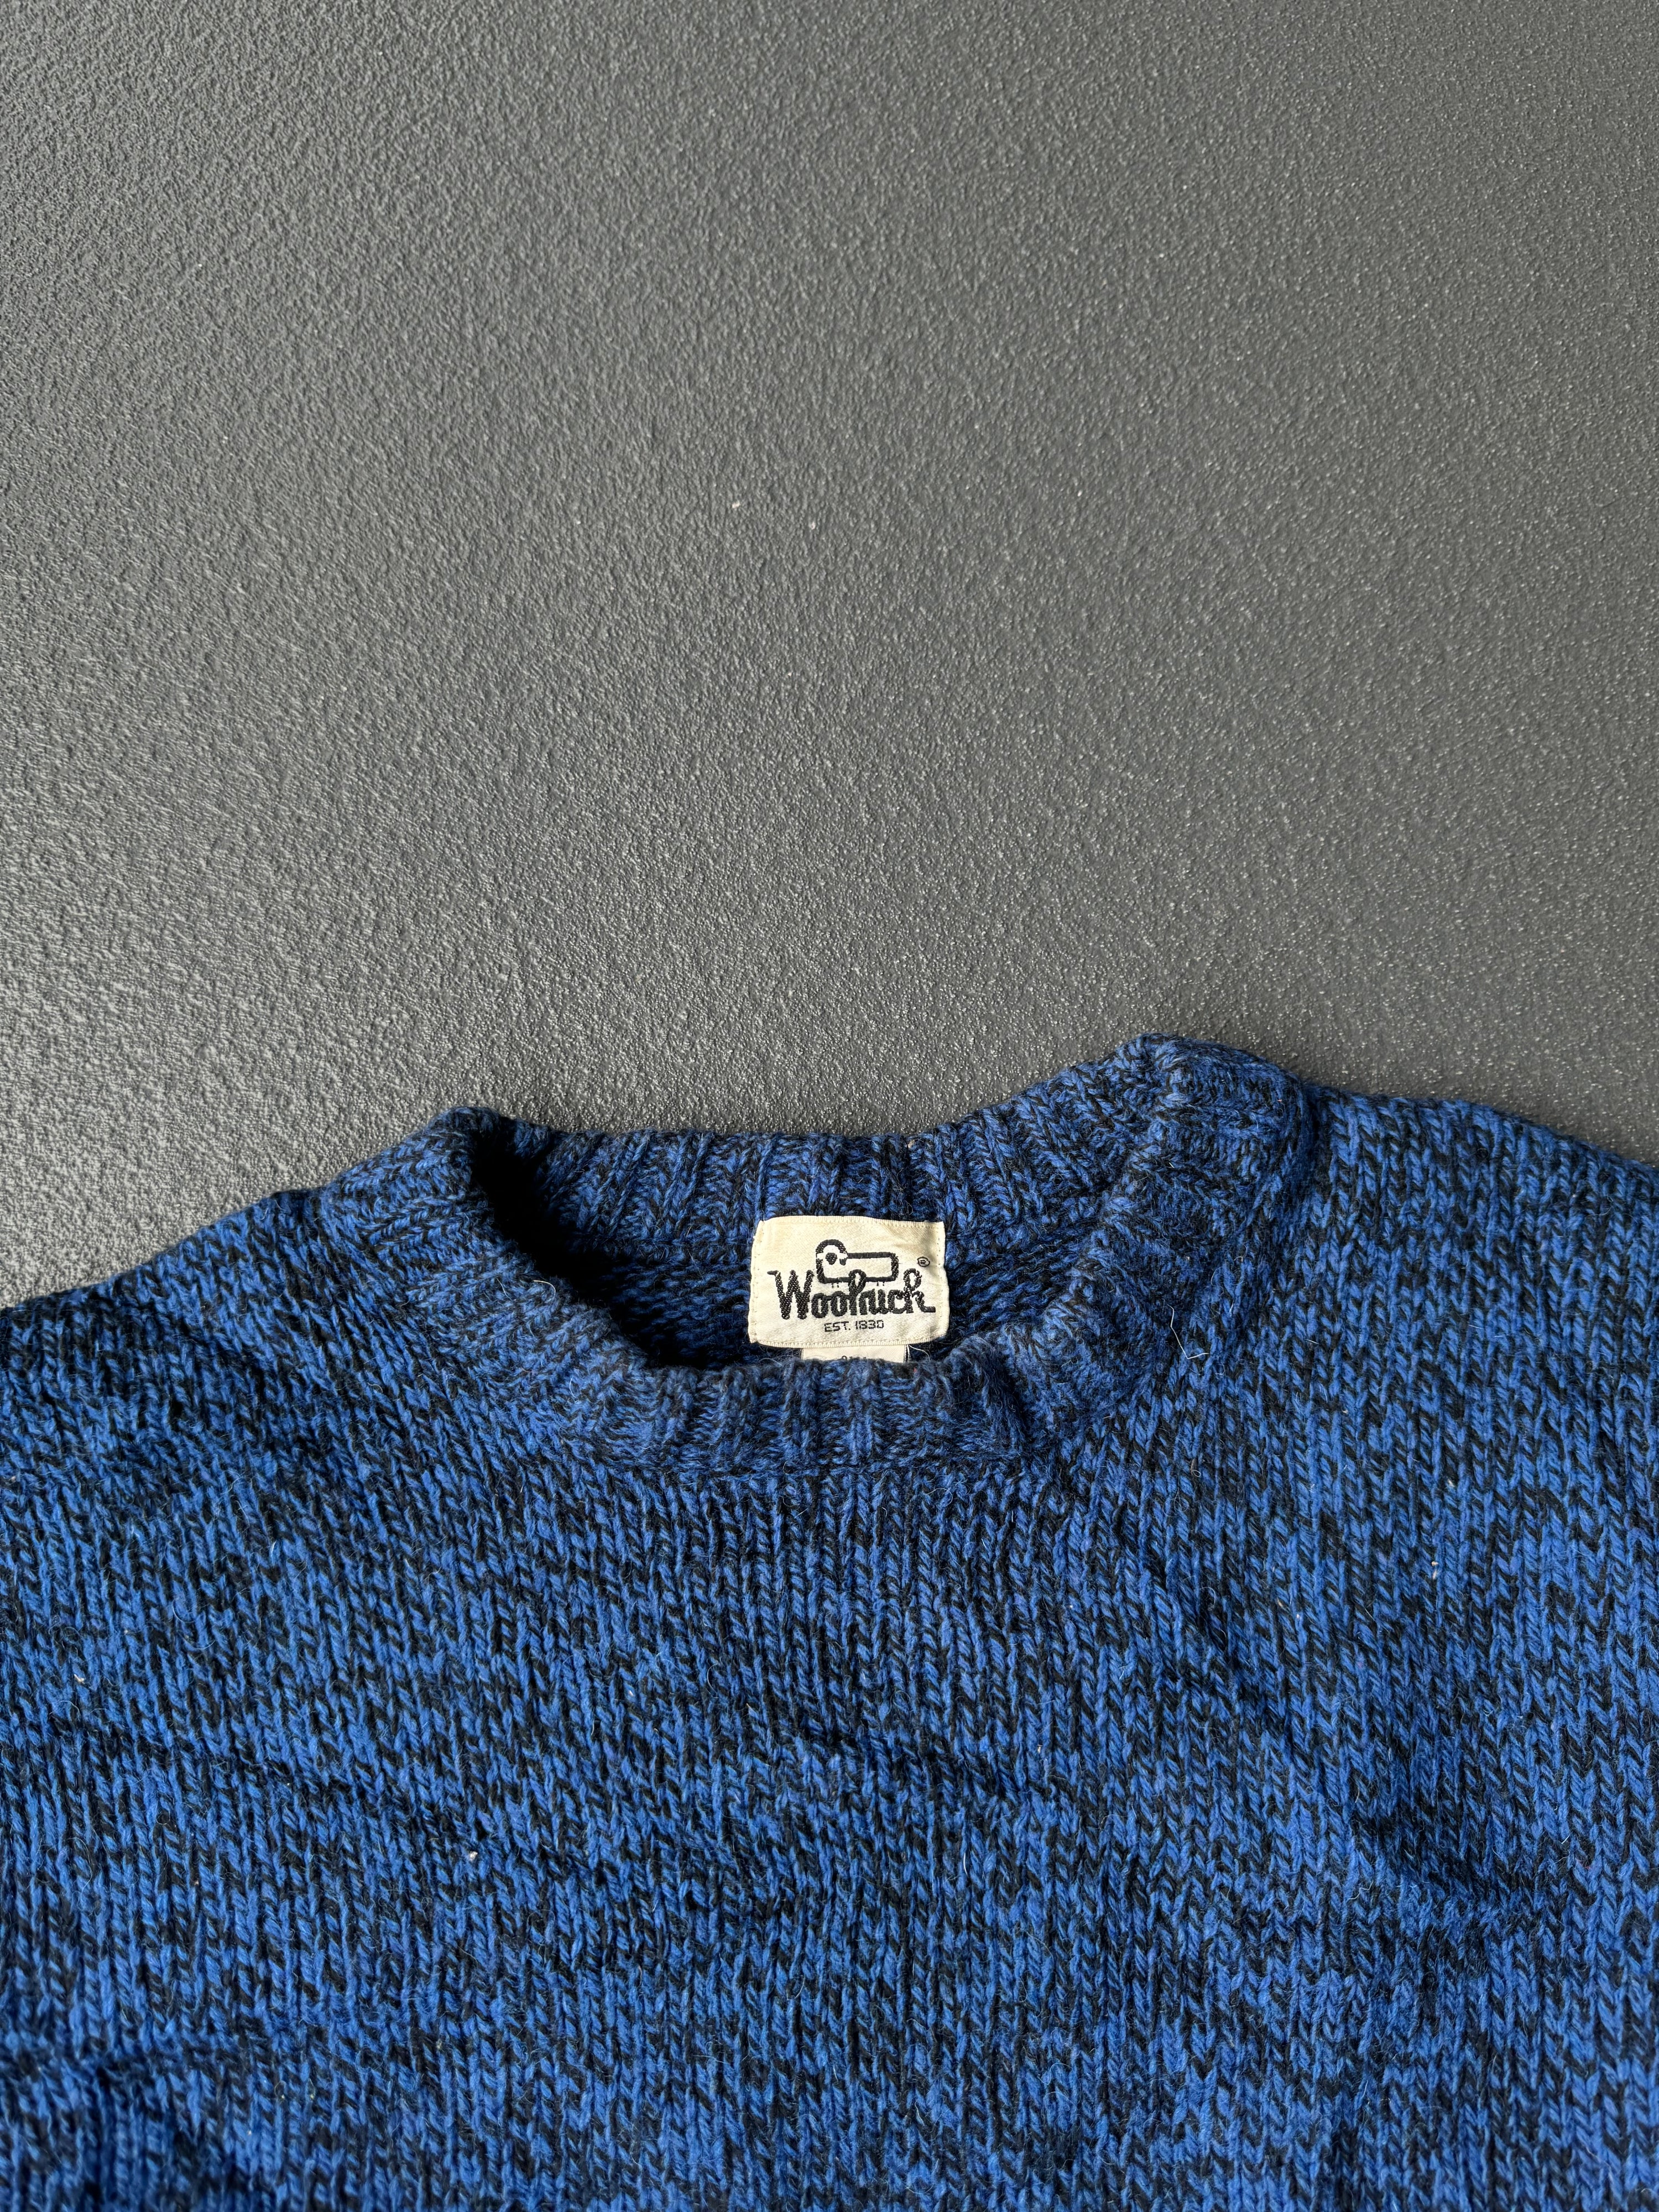 Vintage 80s/90s Woolrich Knit Sweater (L)